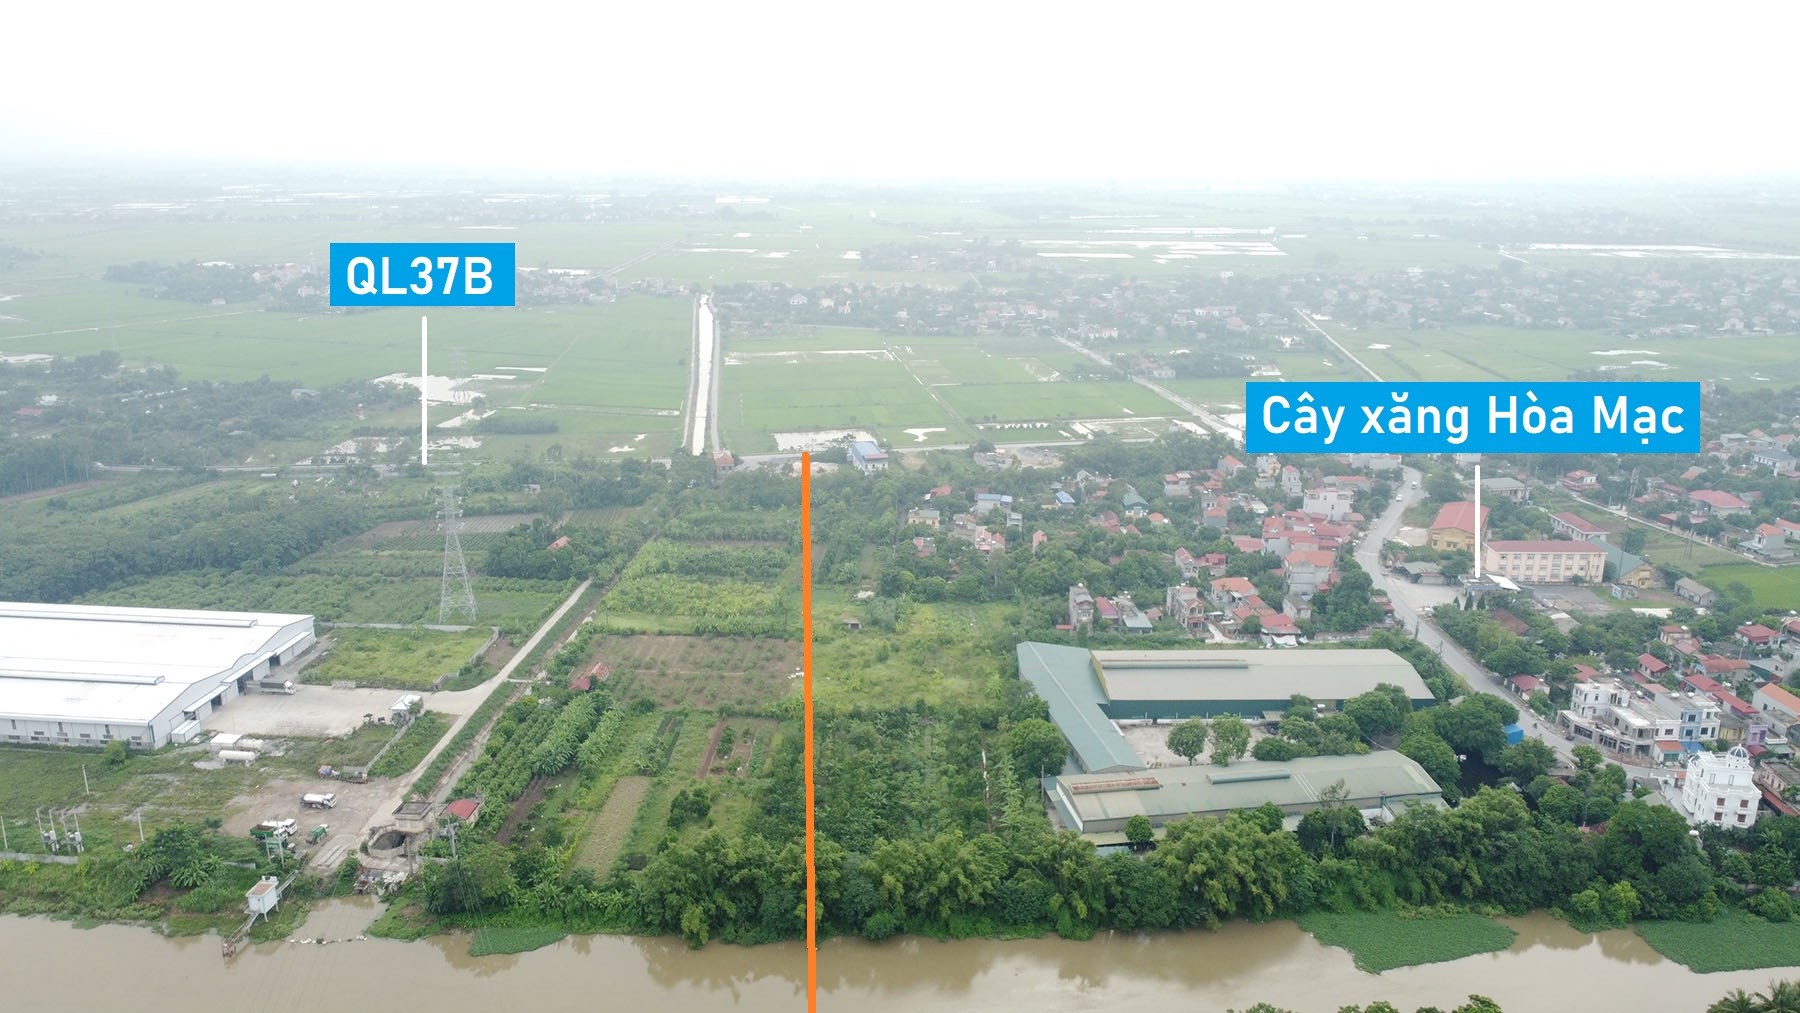 Toàn cảnh vị trí quy hoạch xây cầu vượt sông Châu Giang nối xã Yên Nam với Trác Văn, Duy Tiên, Hà Nam